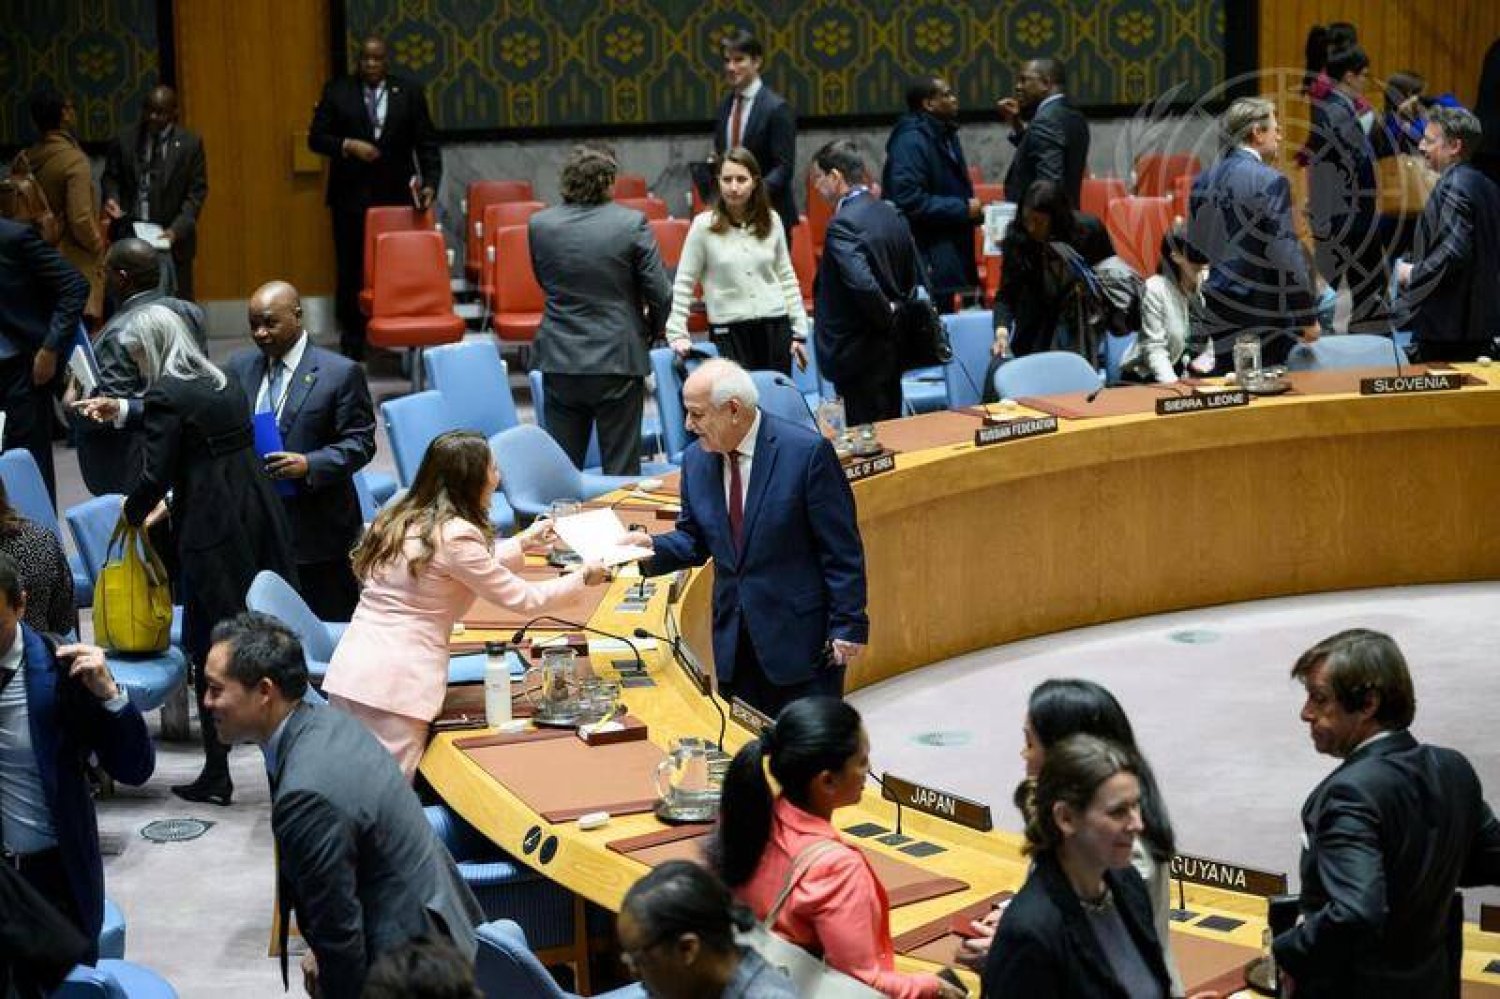 المندوب دولة فلسطين المراقبة رياض منصور يصافح رئيسة مجلس الأمن للشهر الجاري المندوبة المالطية فانيسا فرايزر (صور الأمم المتحدة)